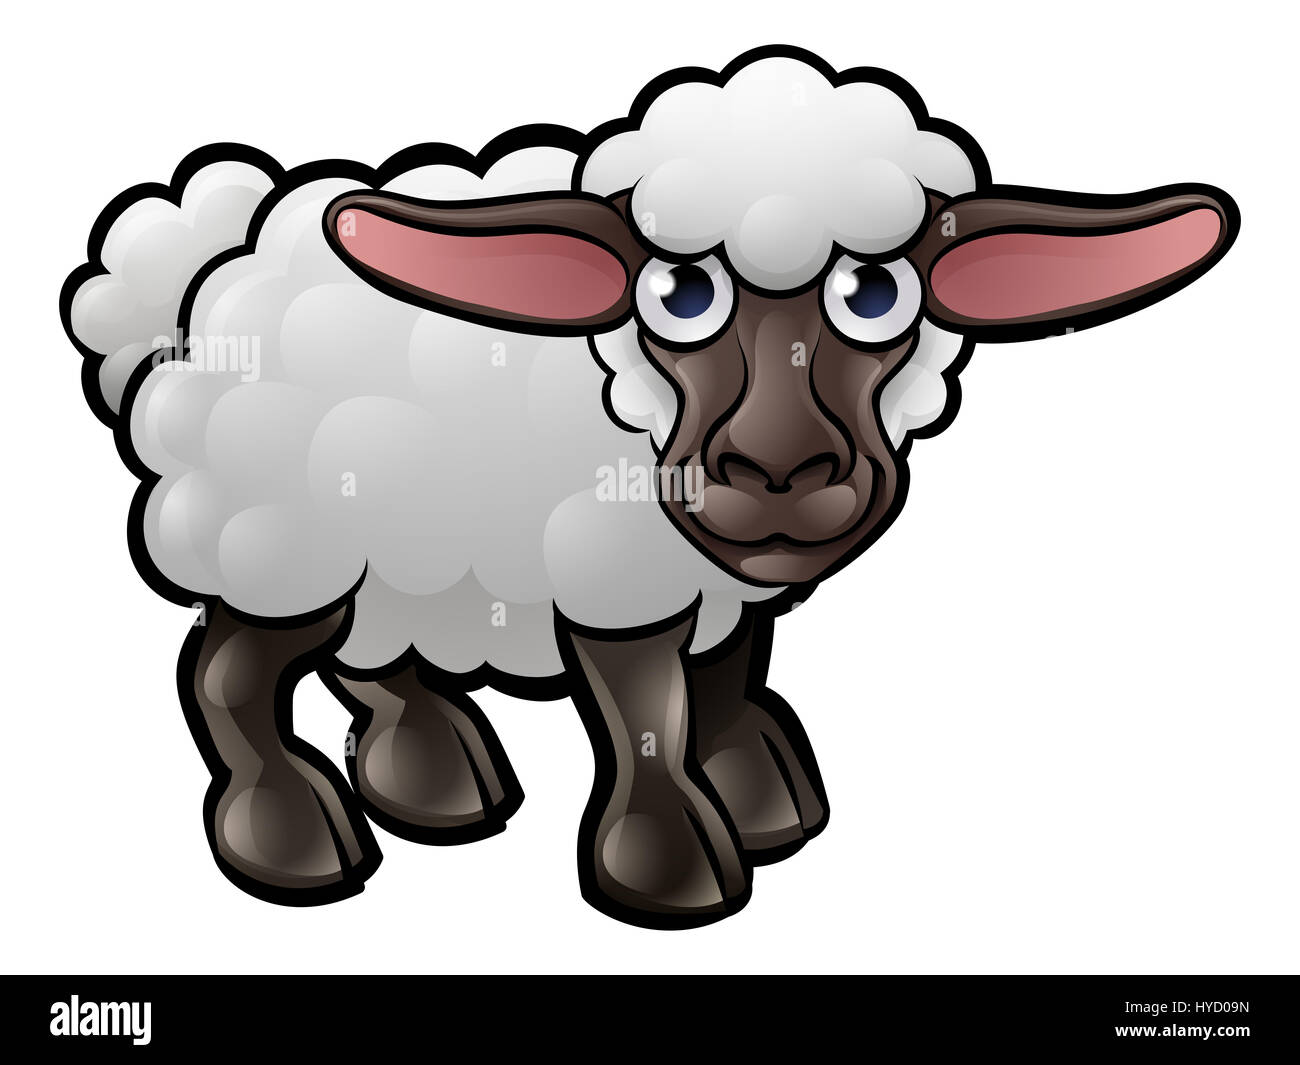 A sheep farm animals cartoon character Stock Photo